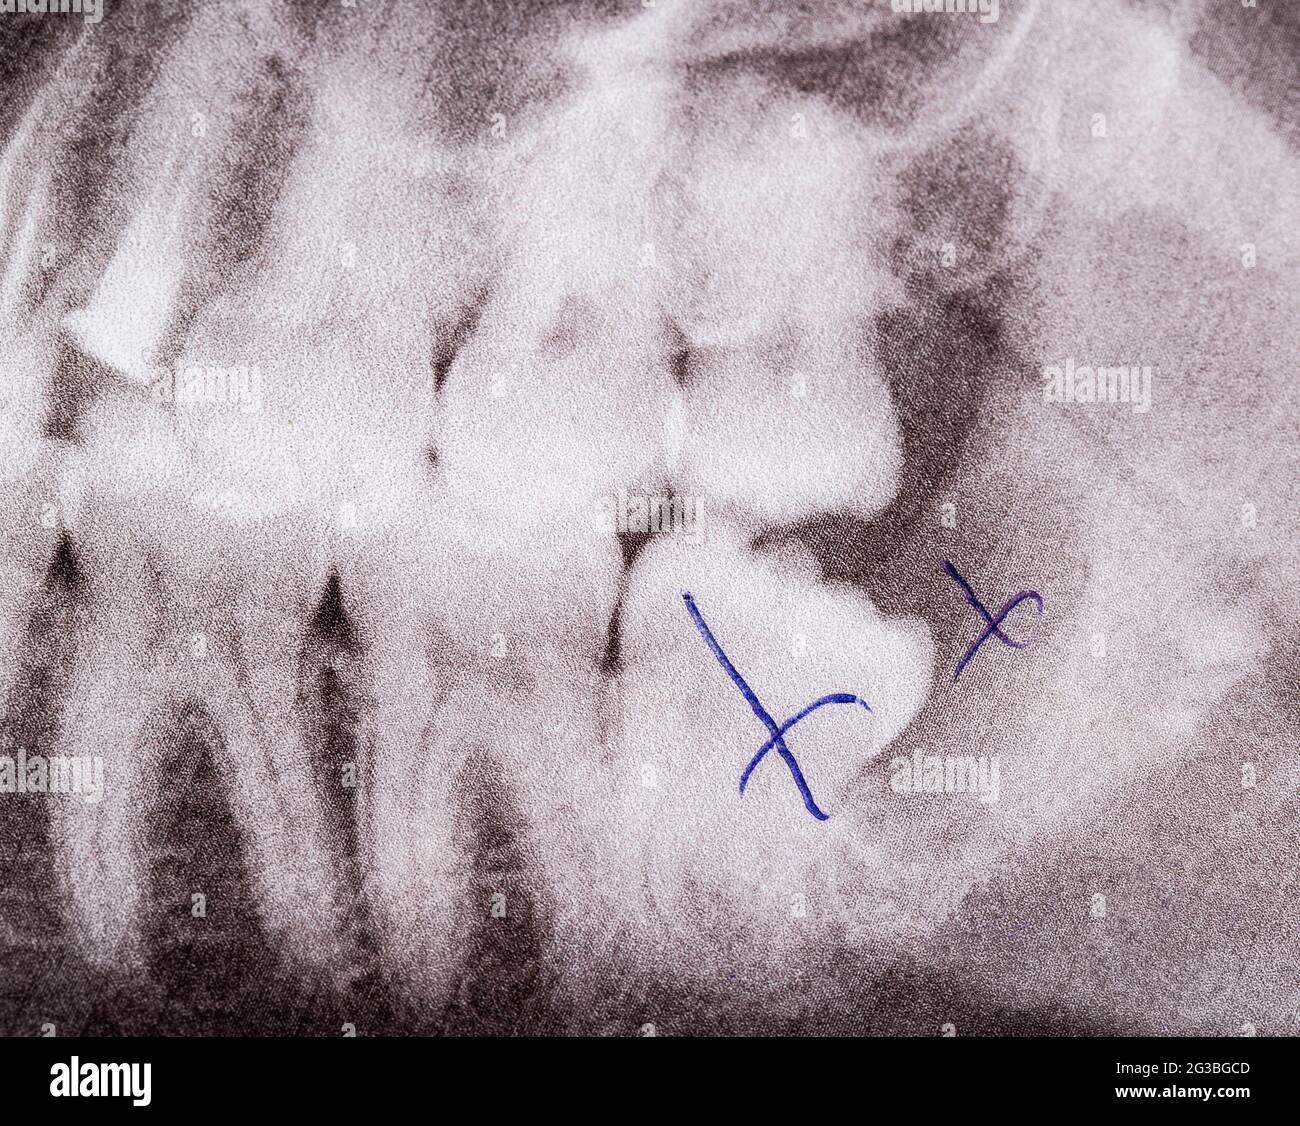 Image des dents par rayons X, retrait de la dent de sagesse et kyste dentaire enflammé, macro. Concept de chirurgie dentaire Banque D'Images